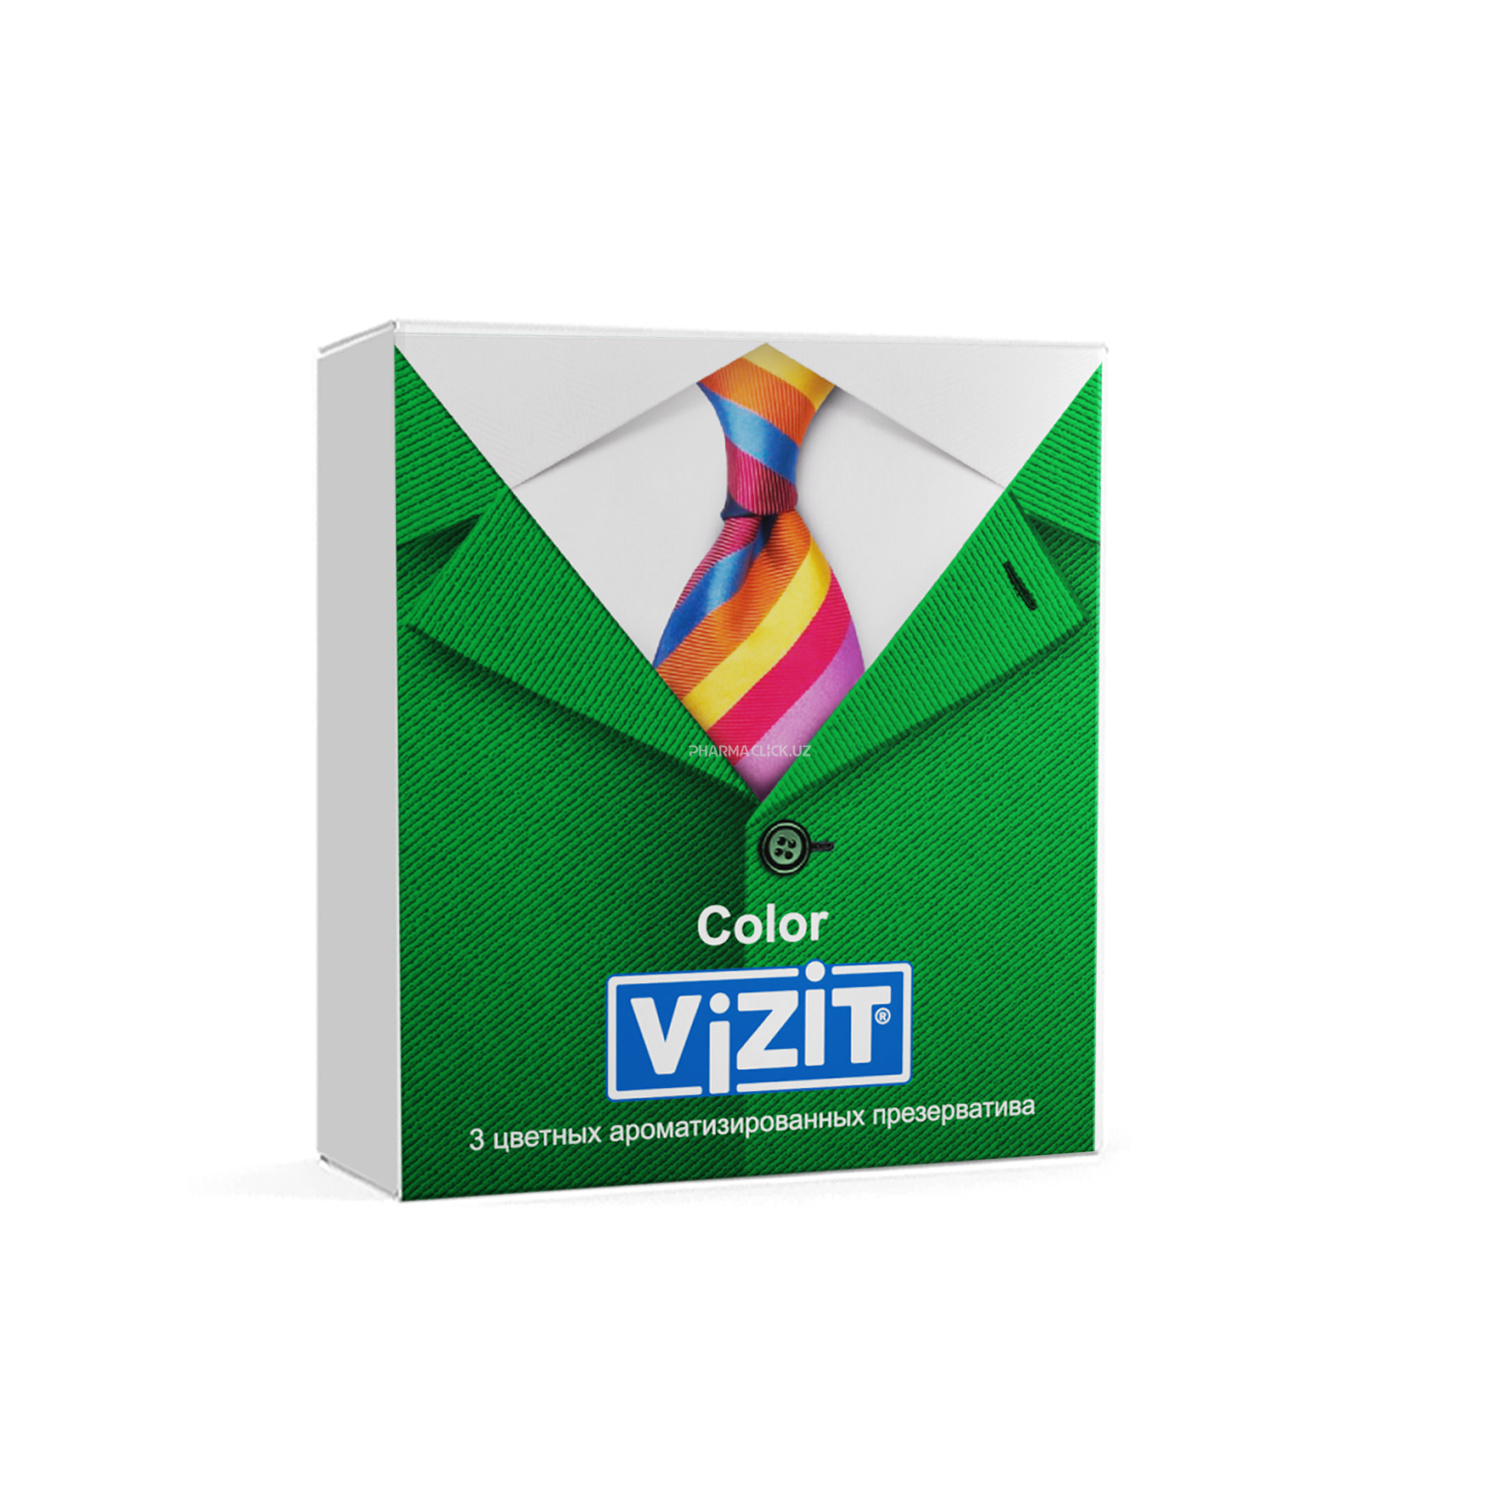 Презервативы "VIZIT" №3 цветные ароматизированные